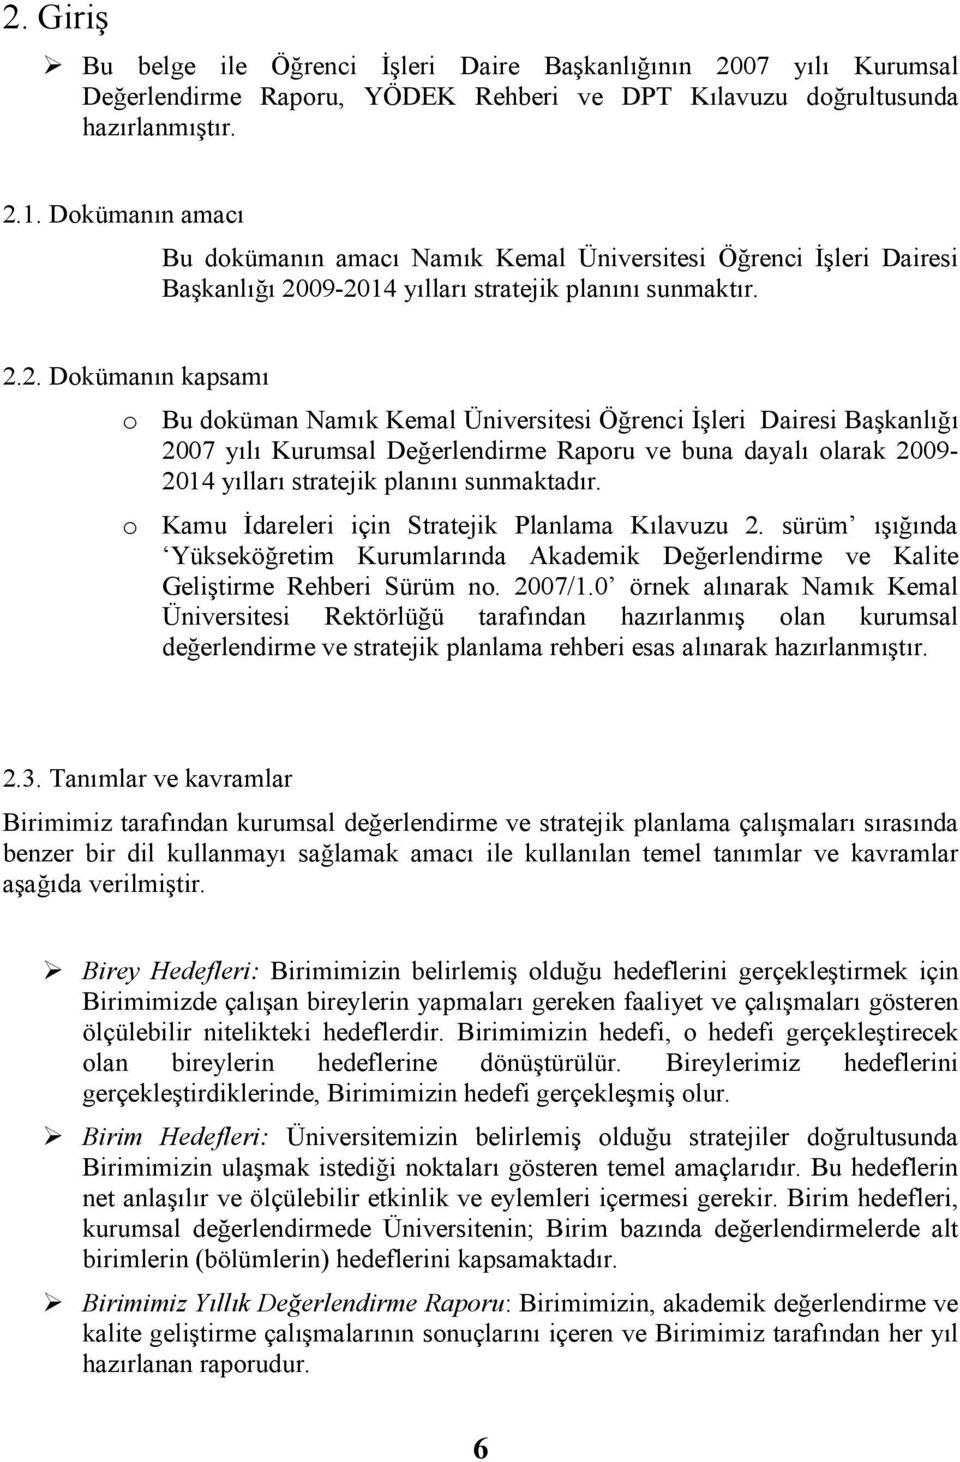 09-2014 yılları stratejik planını sunmaktır. 2.2. Dokümanın kapsamı o Bu doküman Namık Kemal Üniversitesi si Kurumsal Değerlendirme Raporu ve buna dayalı olarak 2009-2014 yılları stratejik planını sunmaktadır.